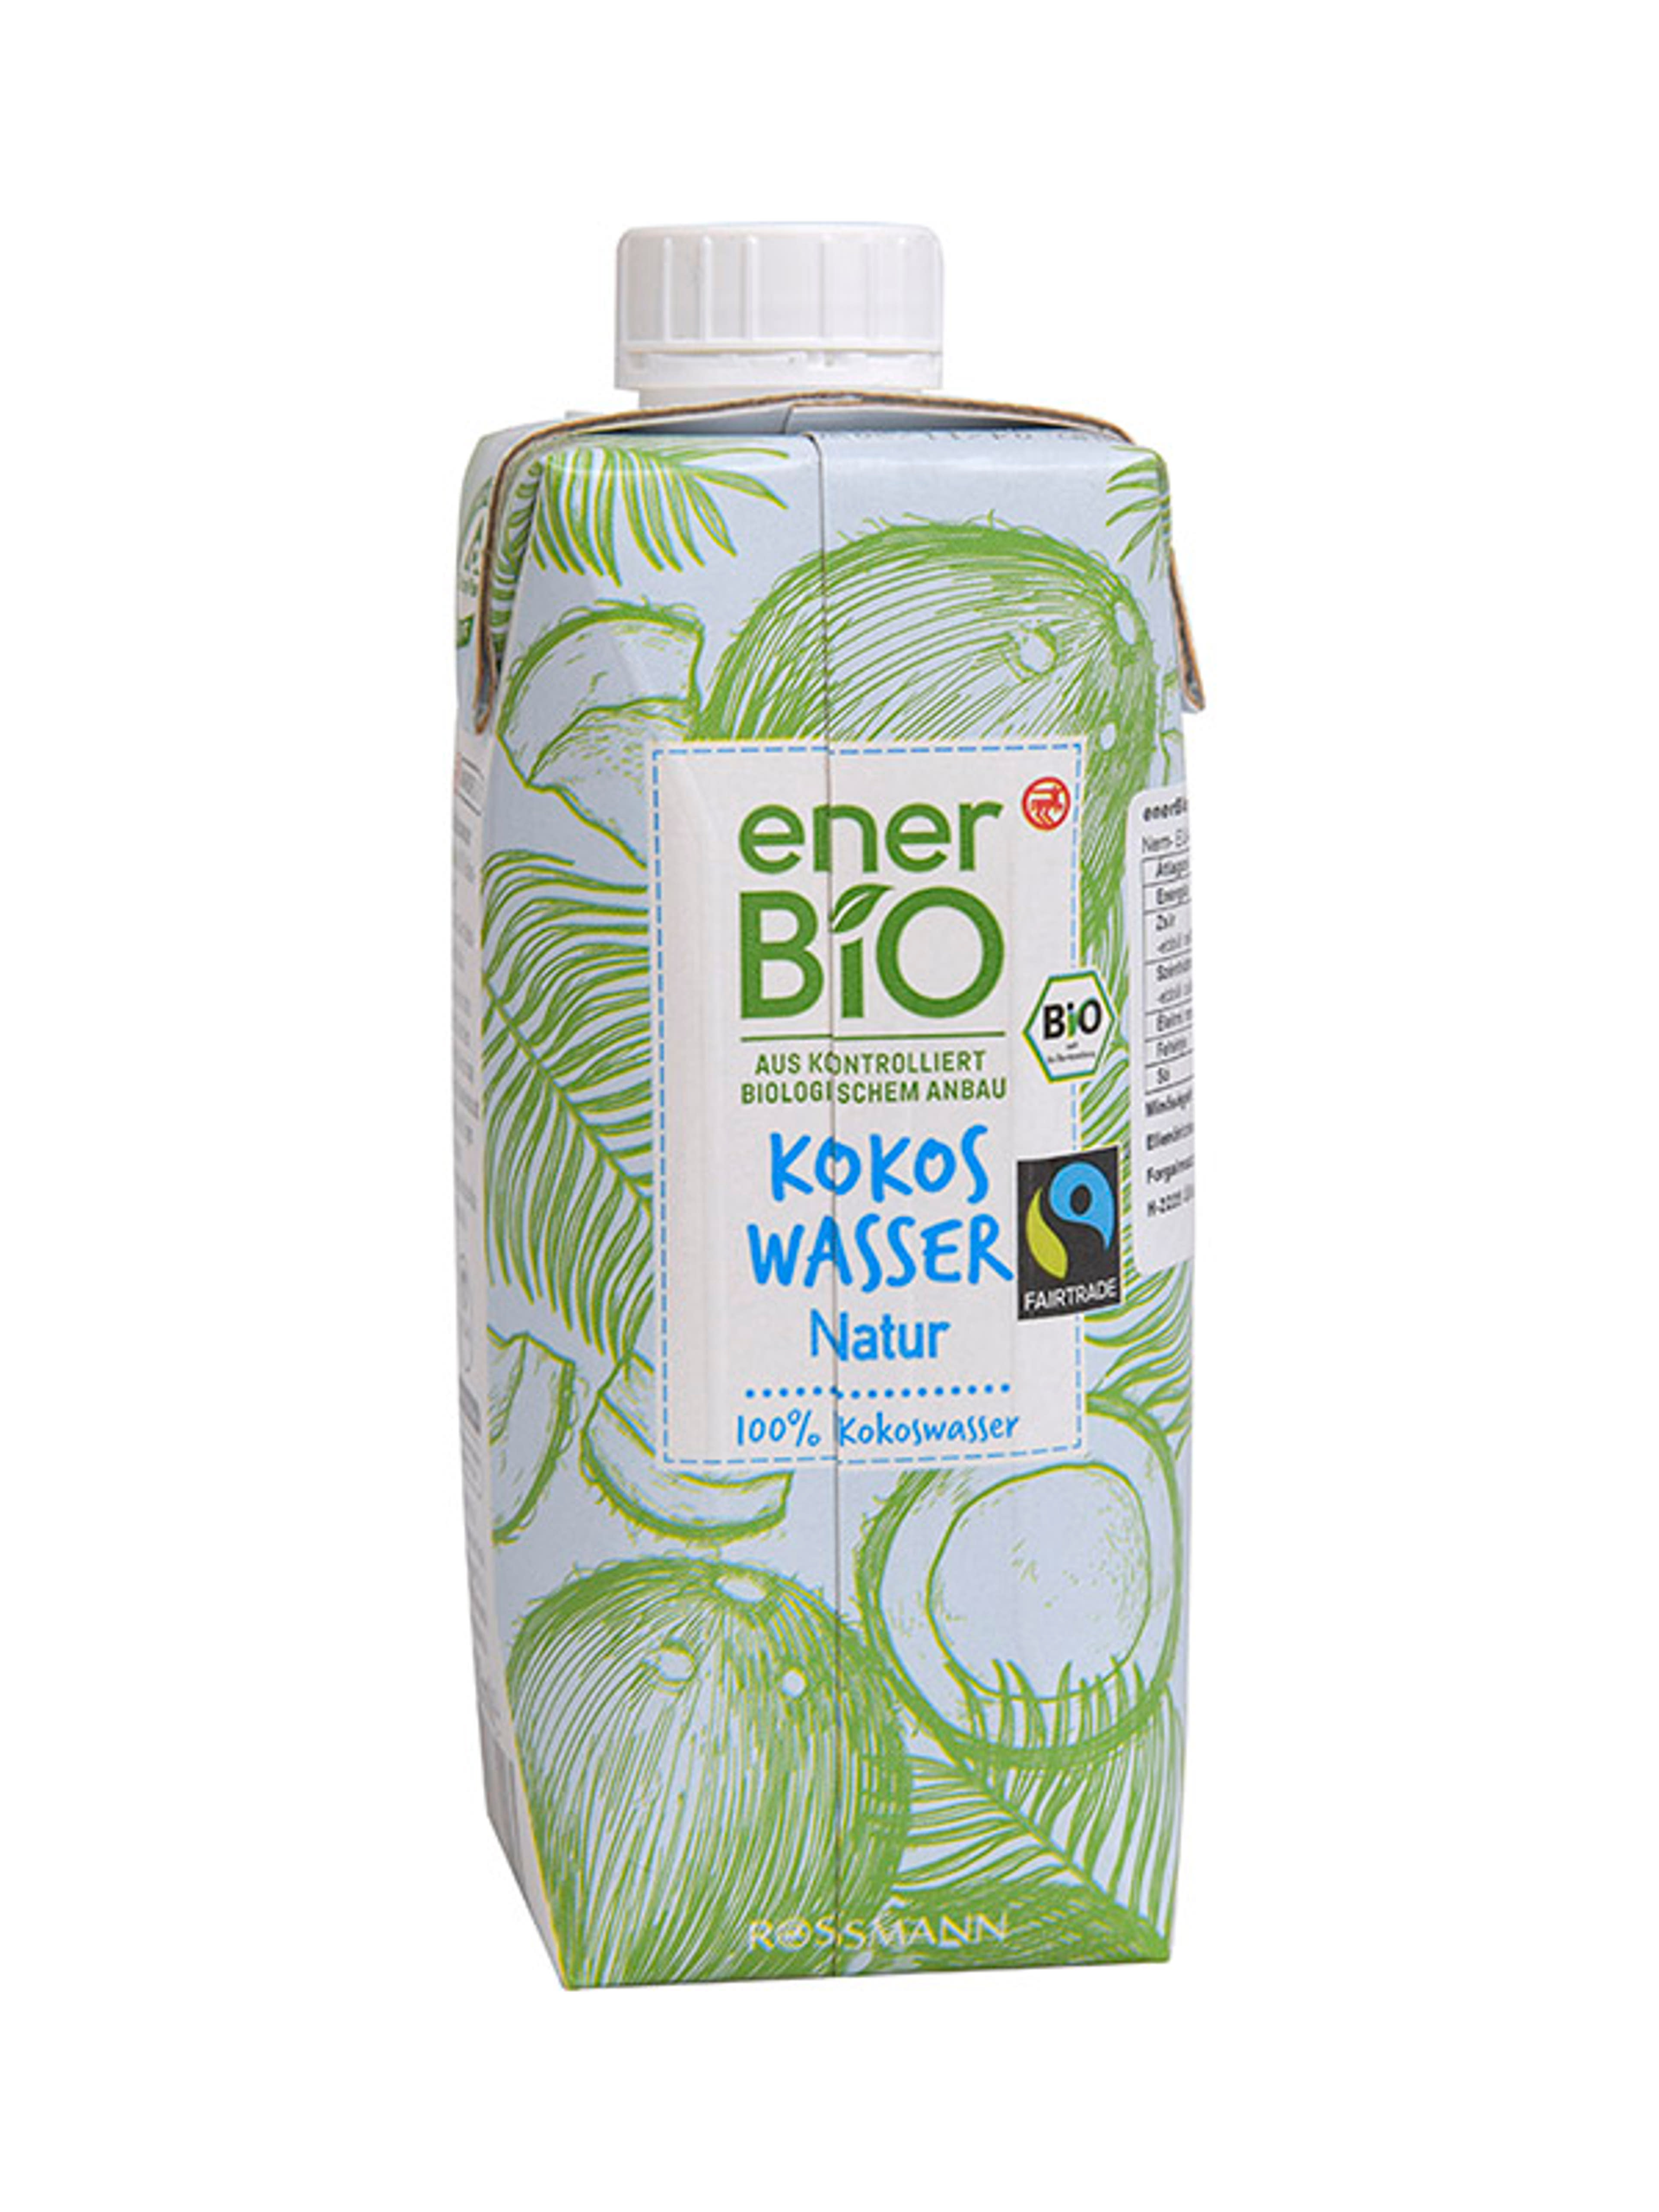 Ener-bio kókuszvíz natur - 330 ml
vegán
ellenőrzött biológiai gazdálkodásból